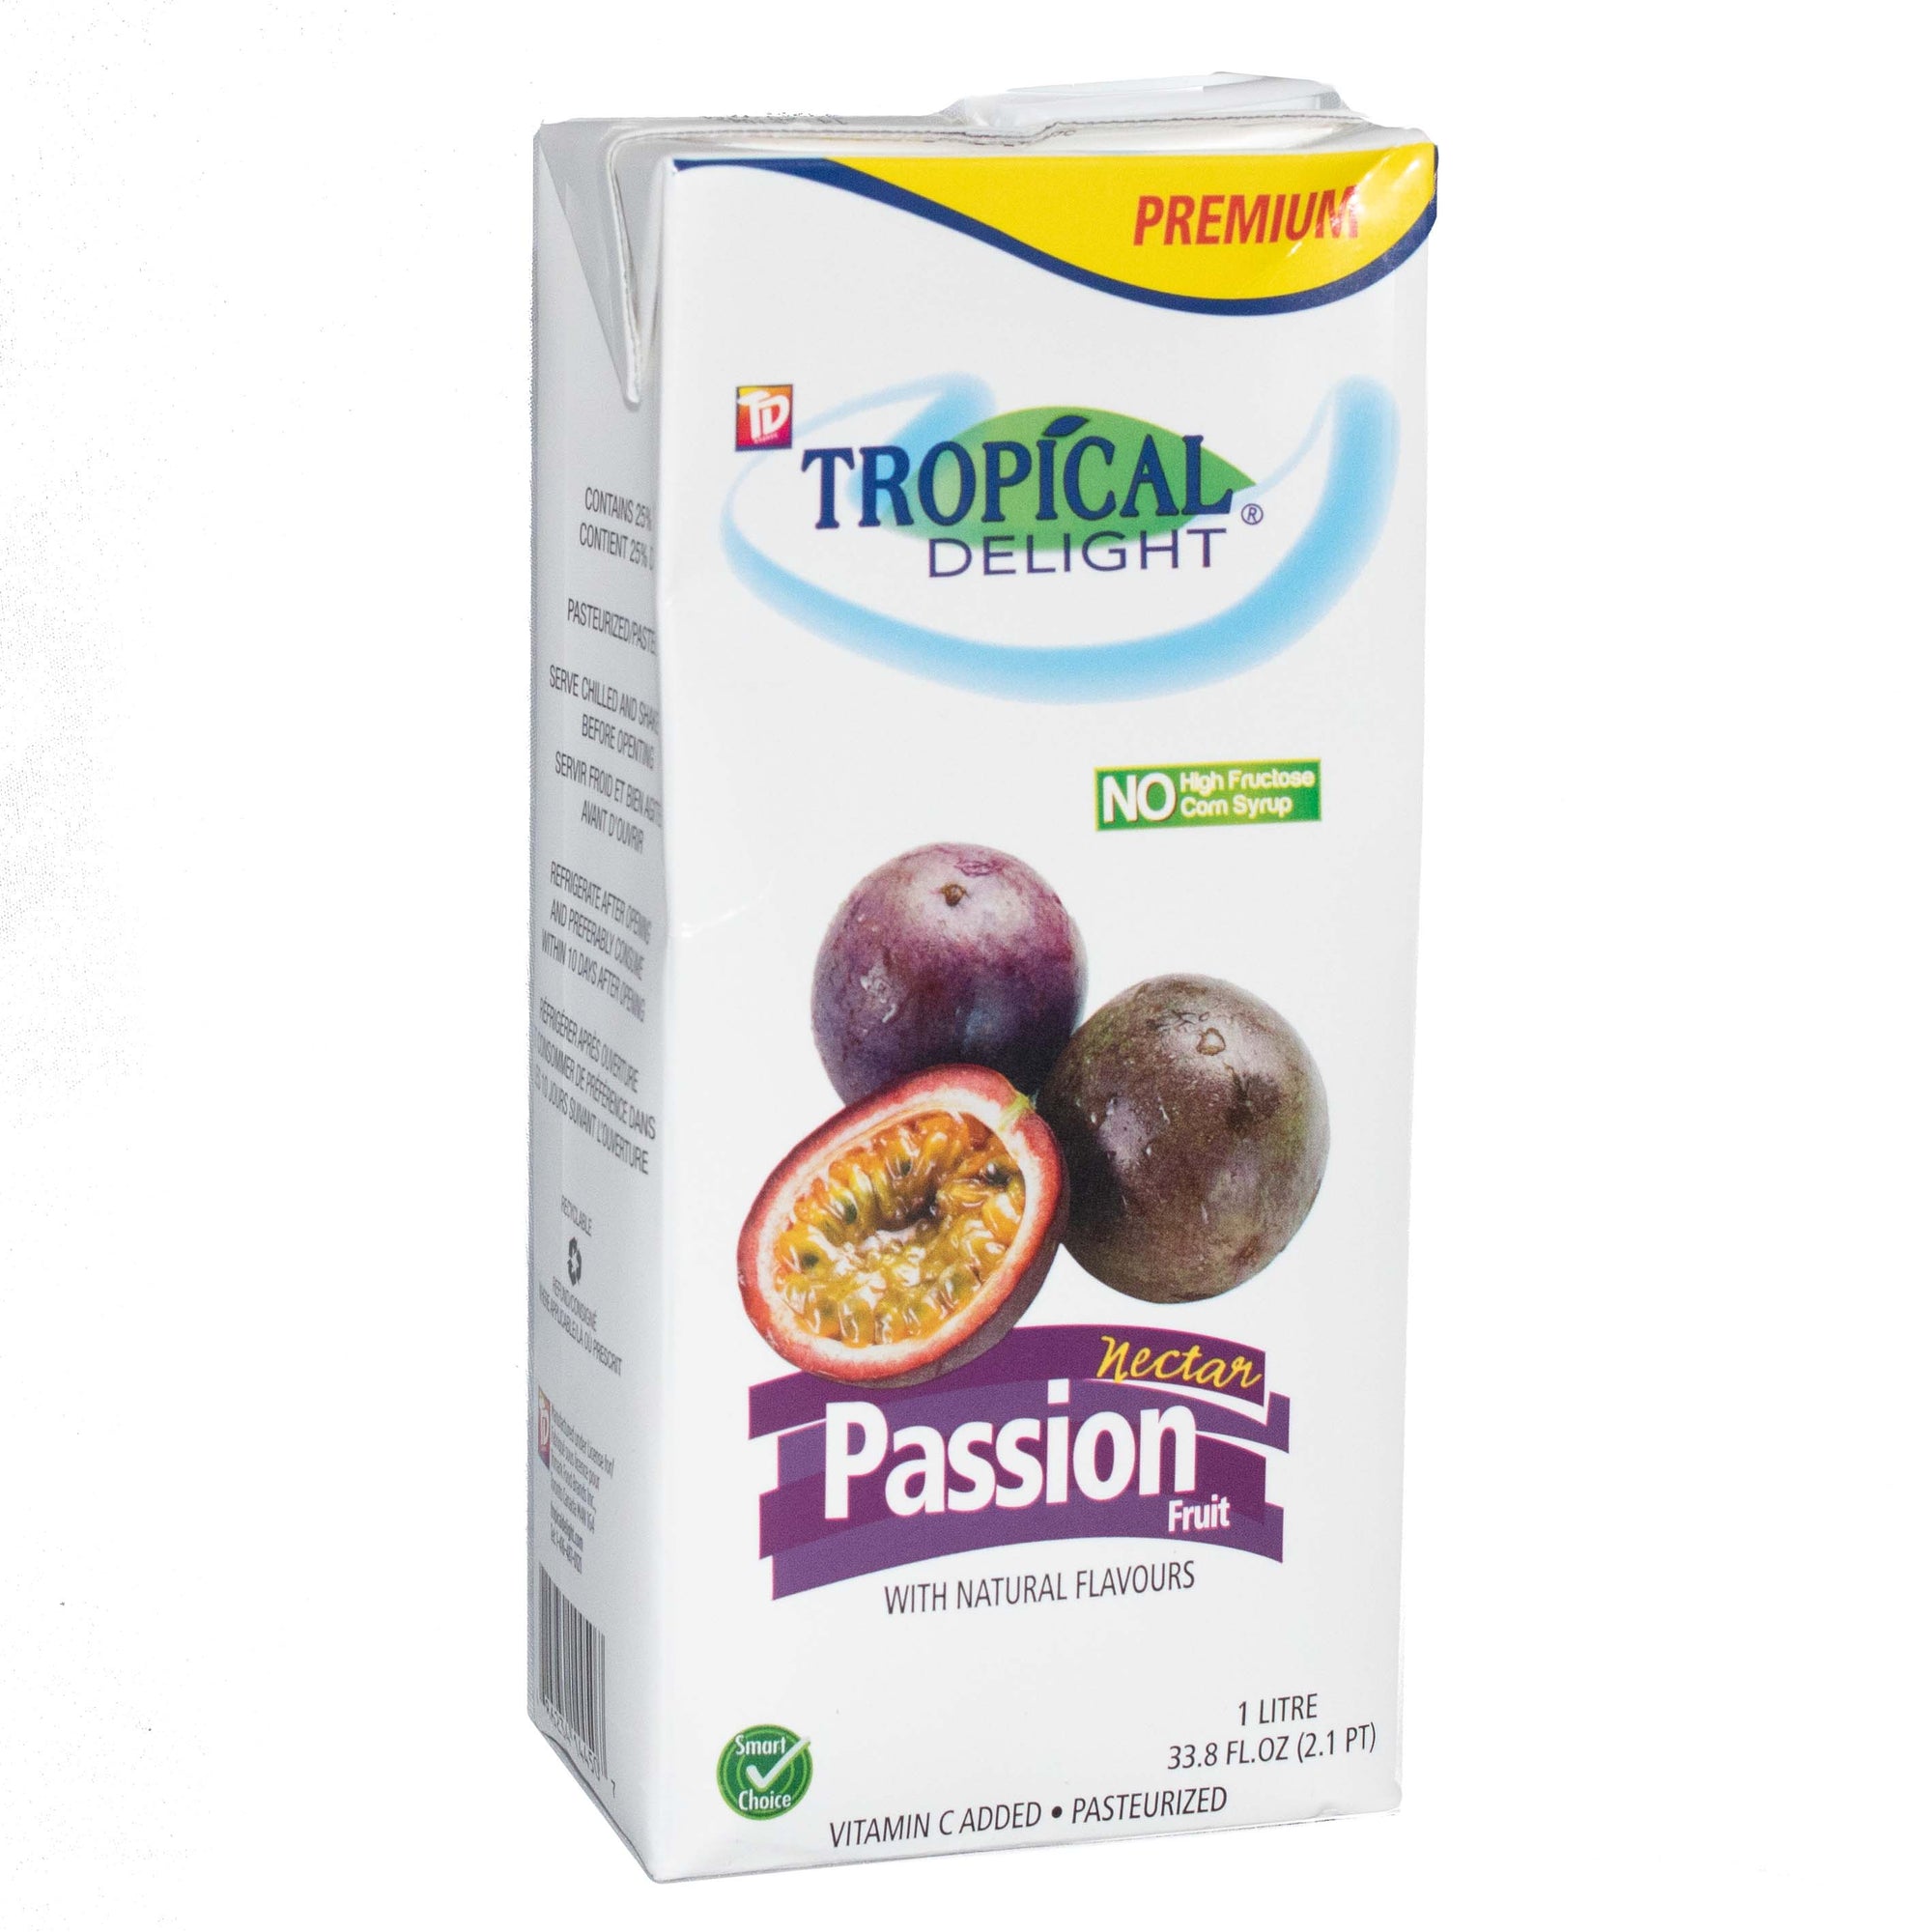 TROPICAL DELIGHT Passion Fruit Juice 1 L